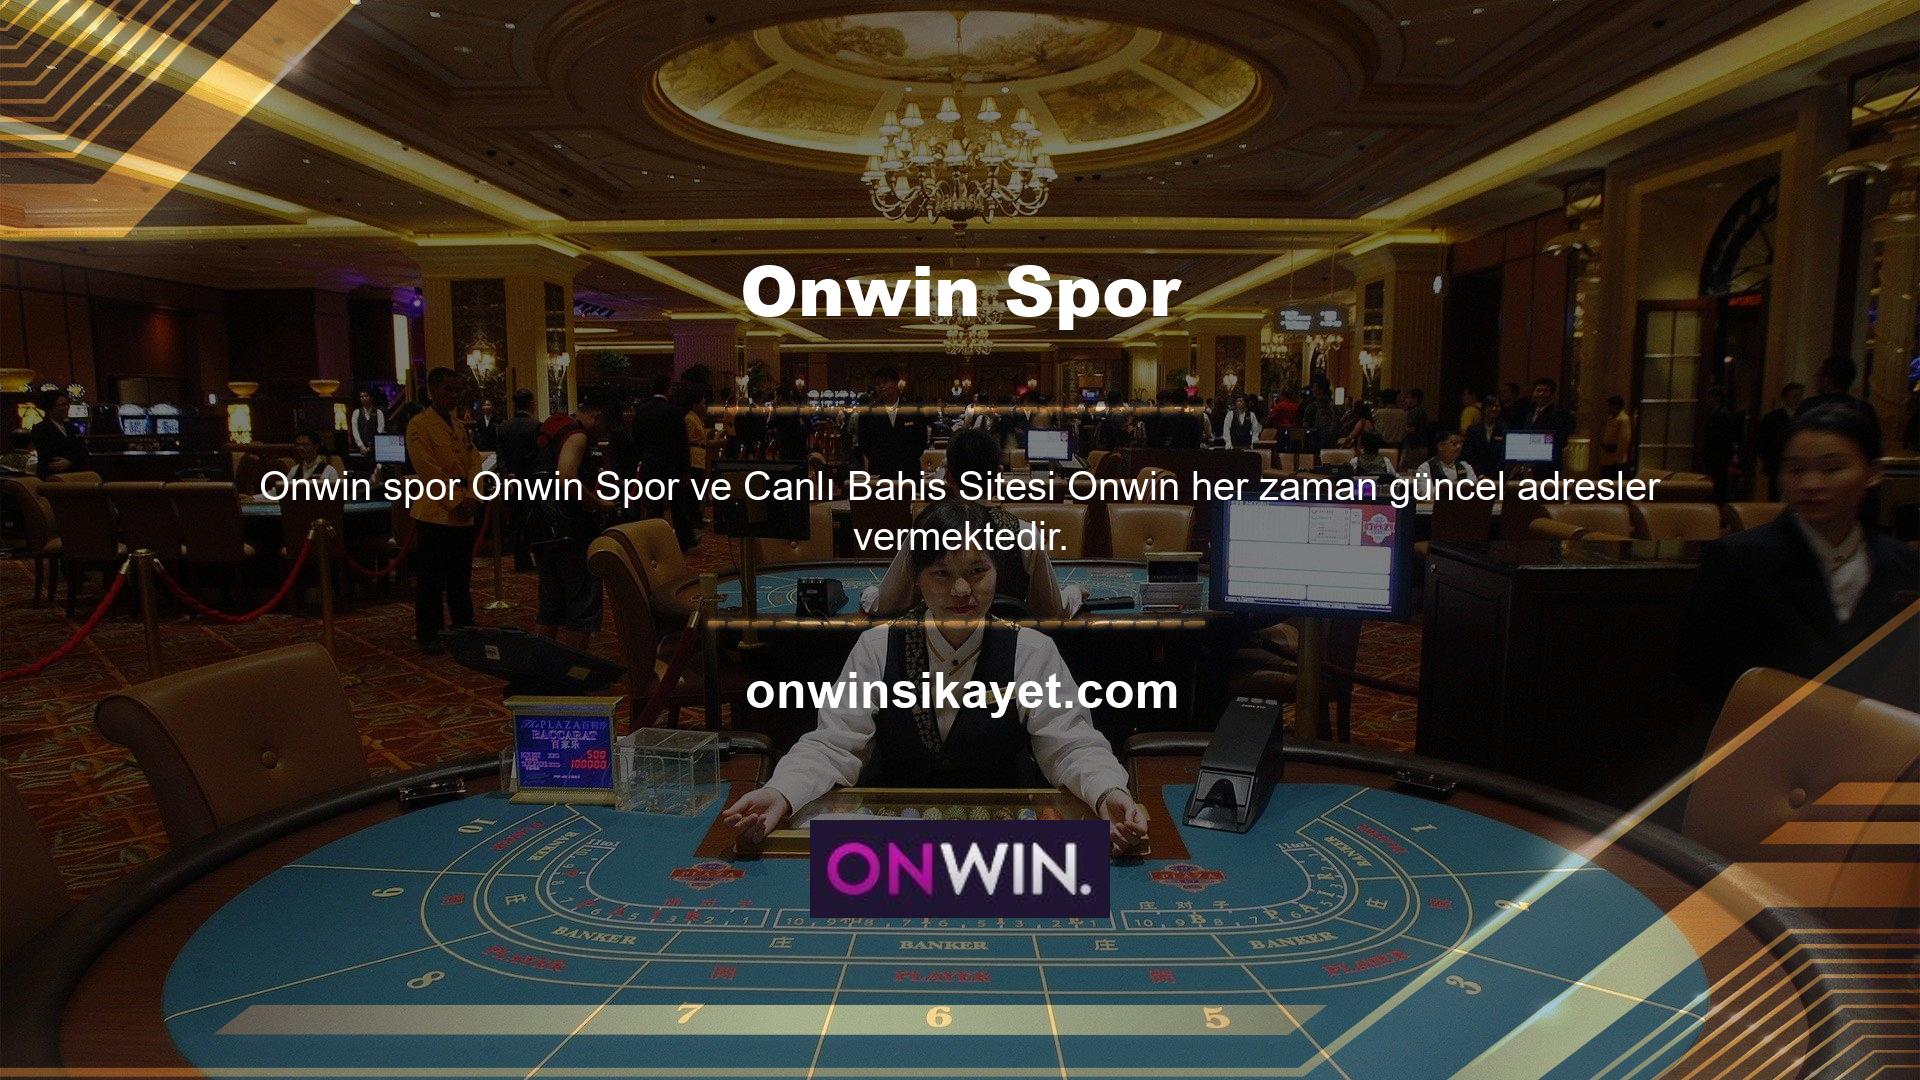 Onwin, bahislerinizden daha fazlasını almanızı sağlayan yüksek oranlara ve harika promosyonlara sahip bir bahis sitesidir